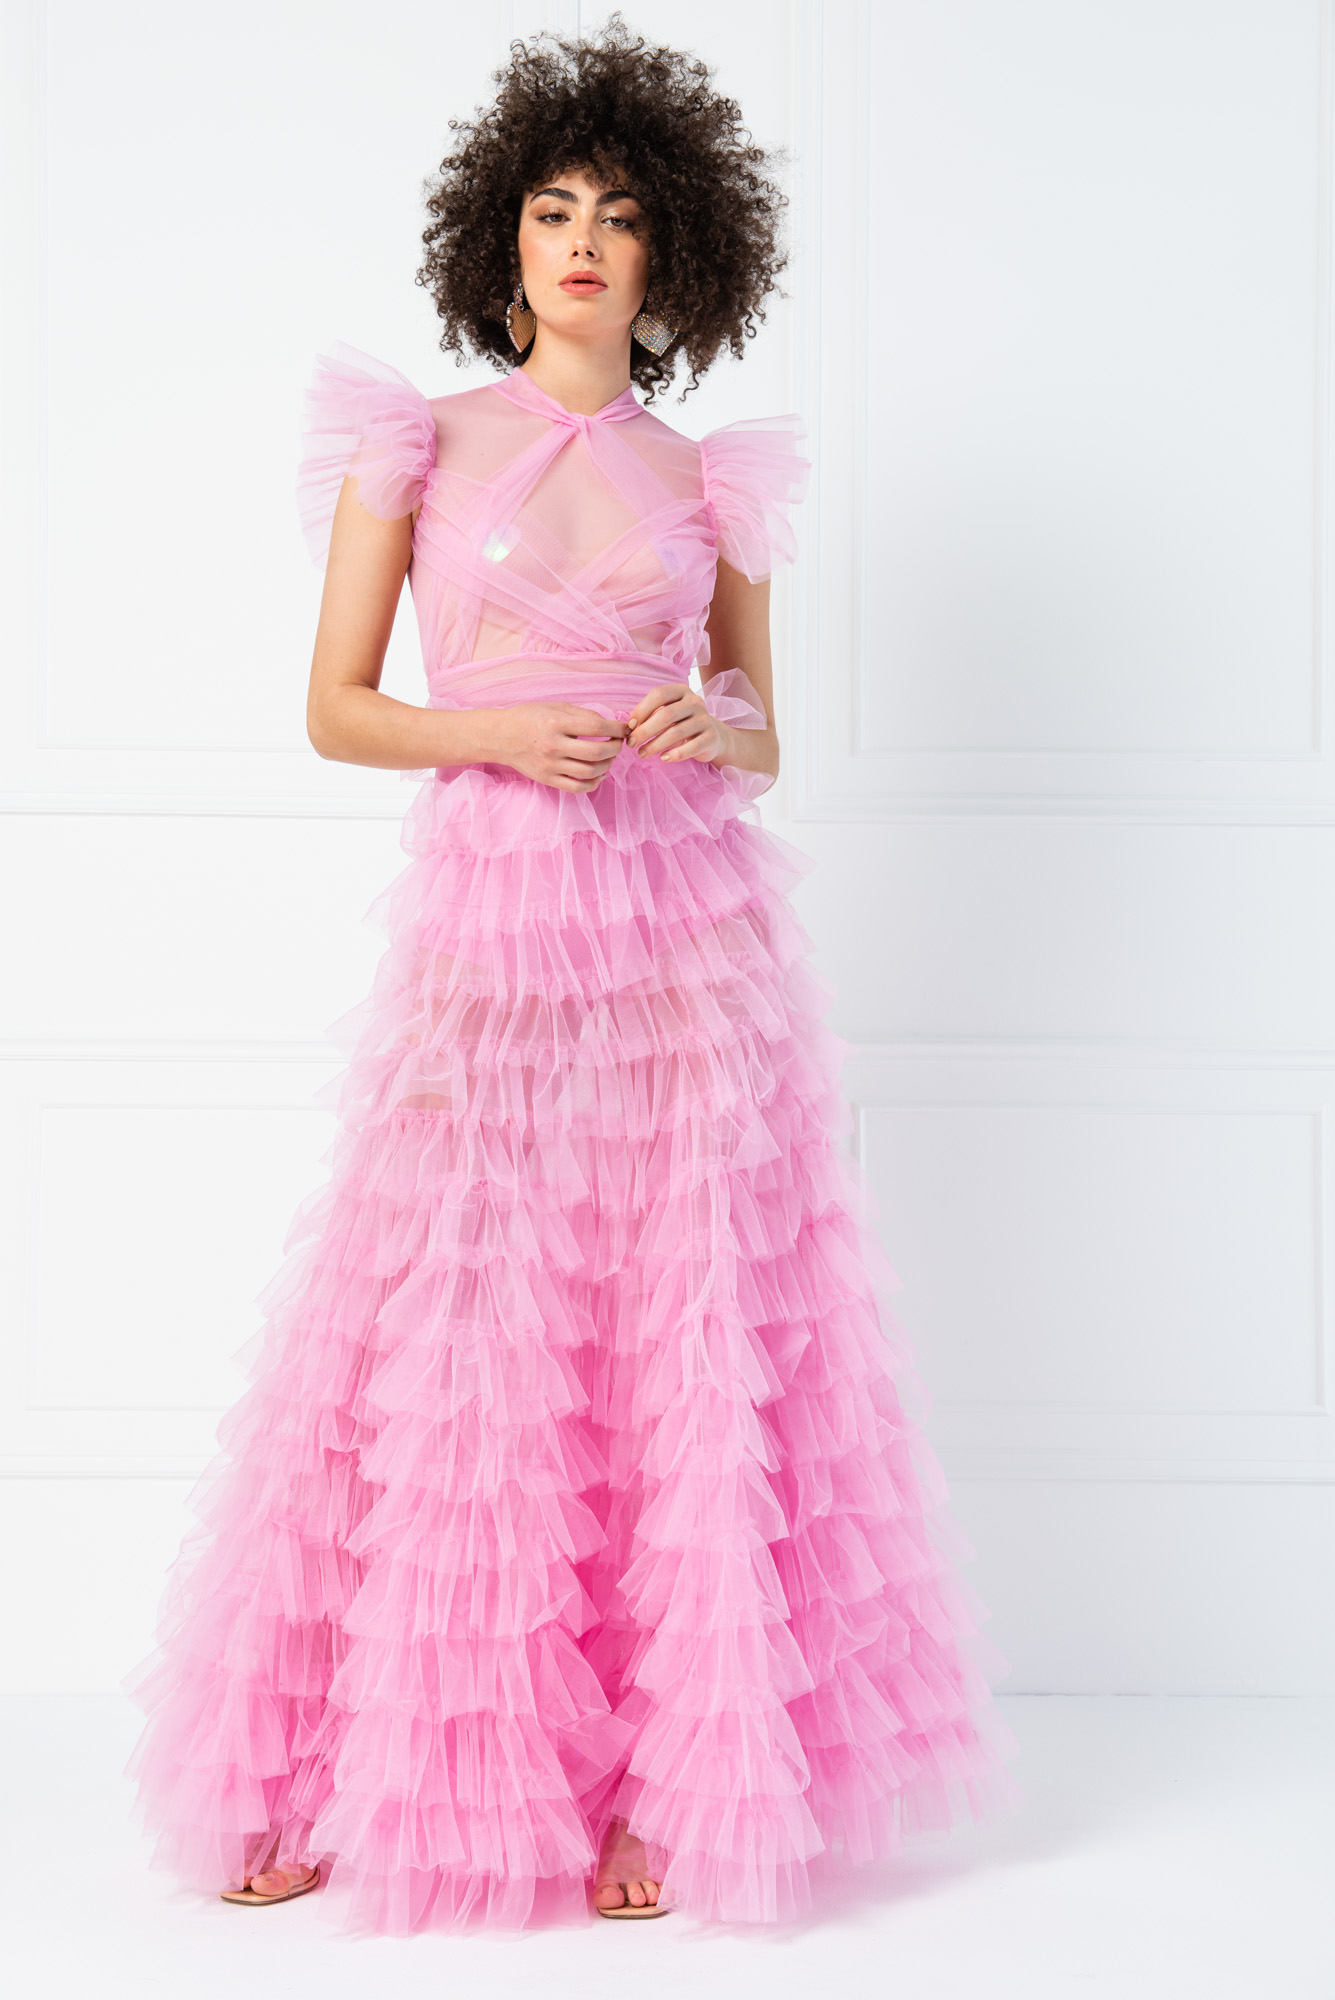 Tulle Detail Transparan Pink Long Dress